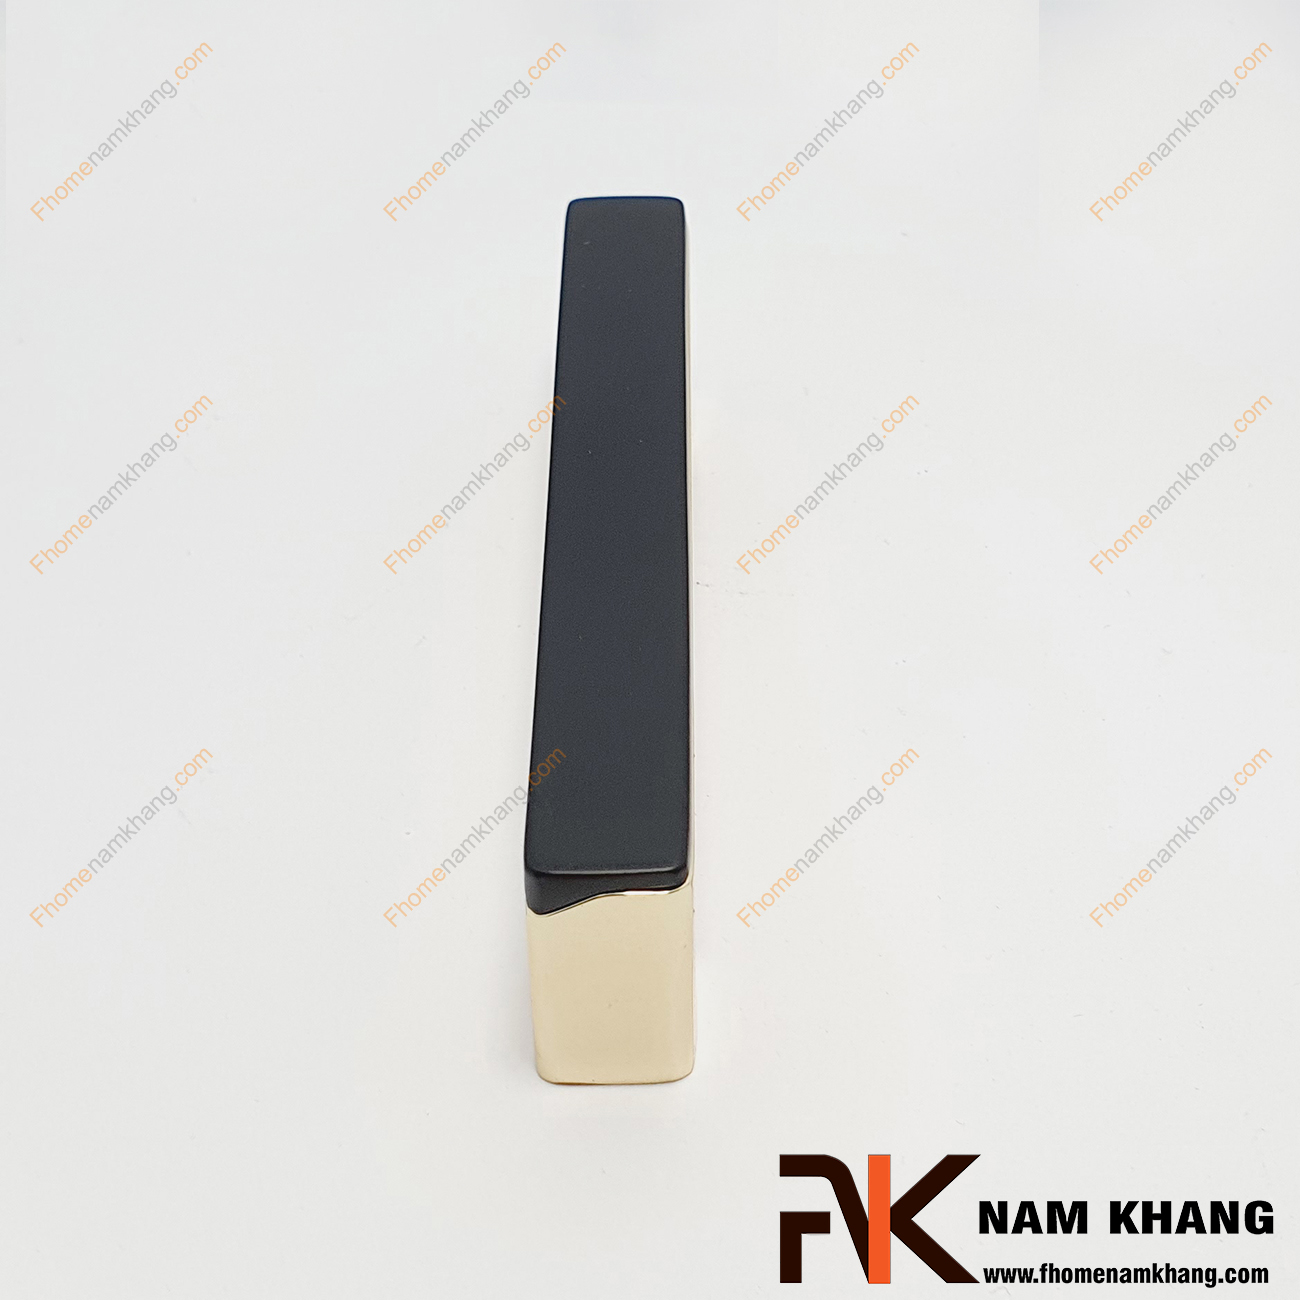 Tay nắm tủ phối hợp NK398-DCN là kiểu tay nắm tủ dạng thanh ghép liền từ 2 phần khác nhau cho sự ấn tượng đặc biệt trên một sản phẩm nhỏ gọn.